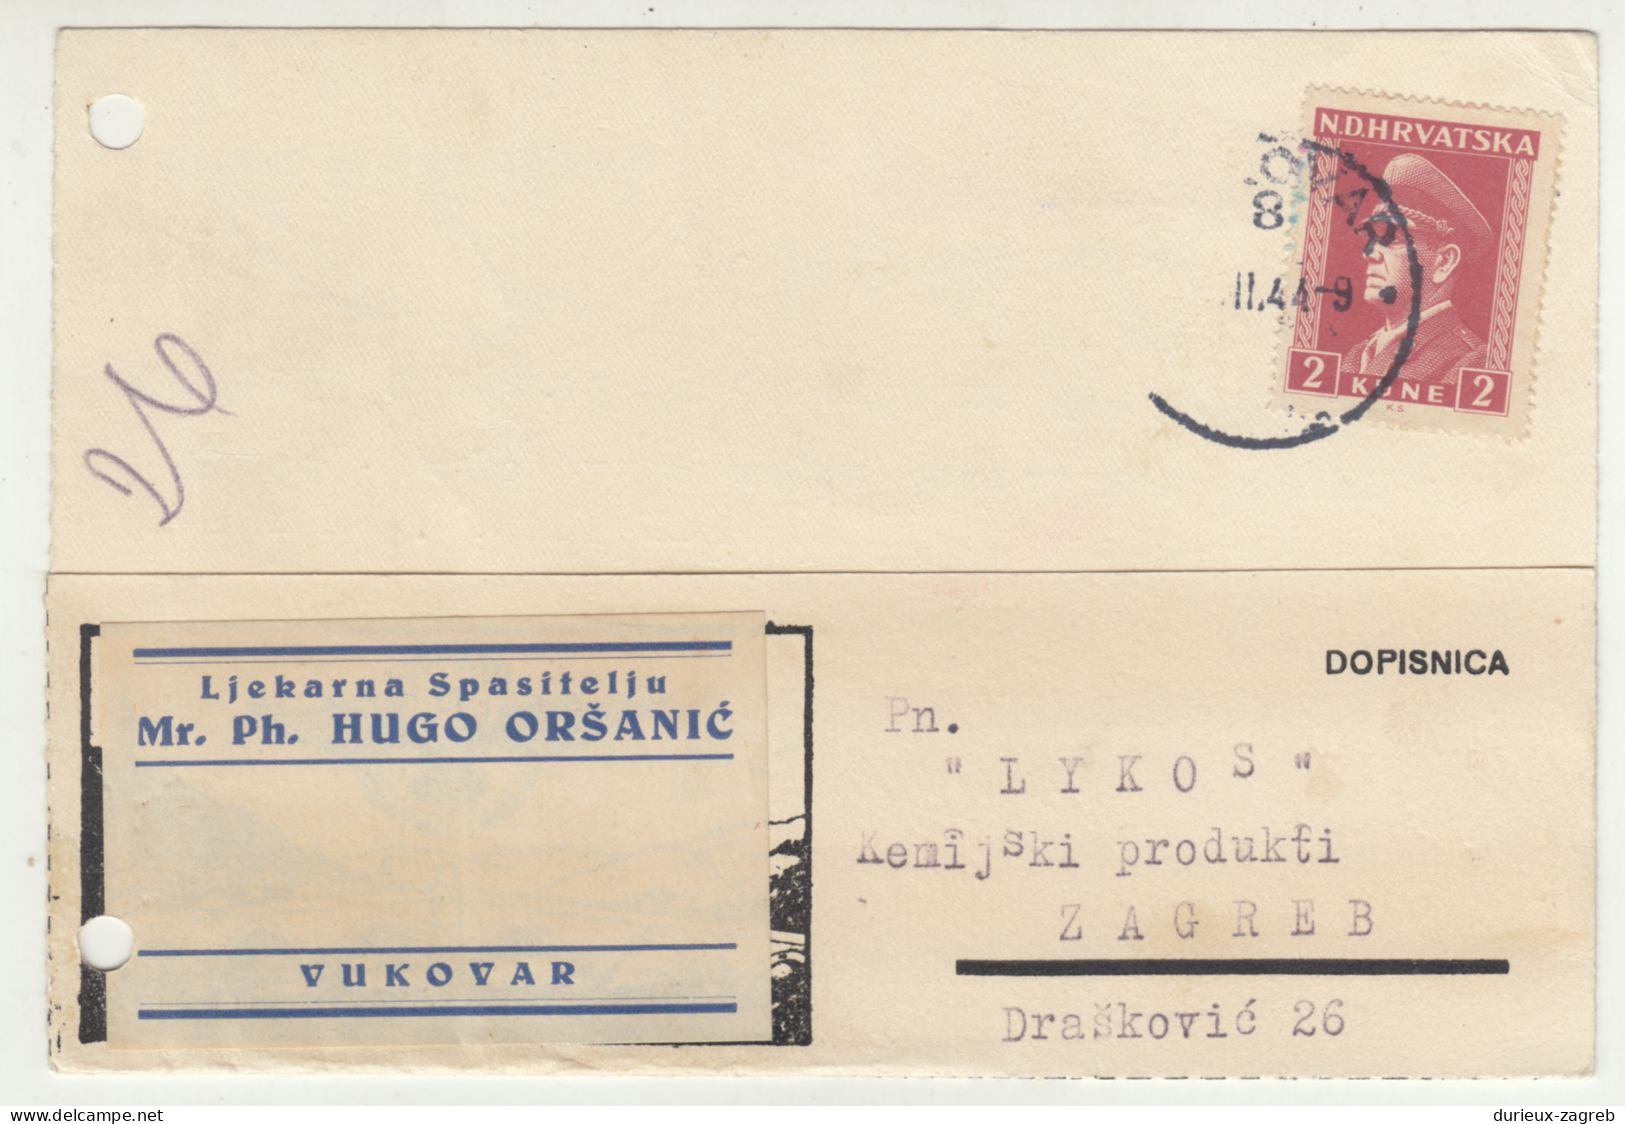 Ljekarna Spasitelju, Hugo Oršanić, Vukovar Company Postal Card Posted 1944 B240503 - Croatia